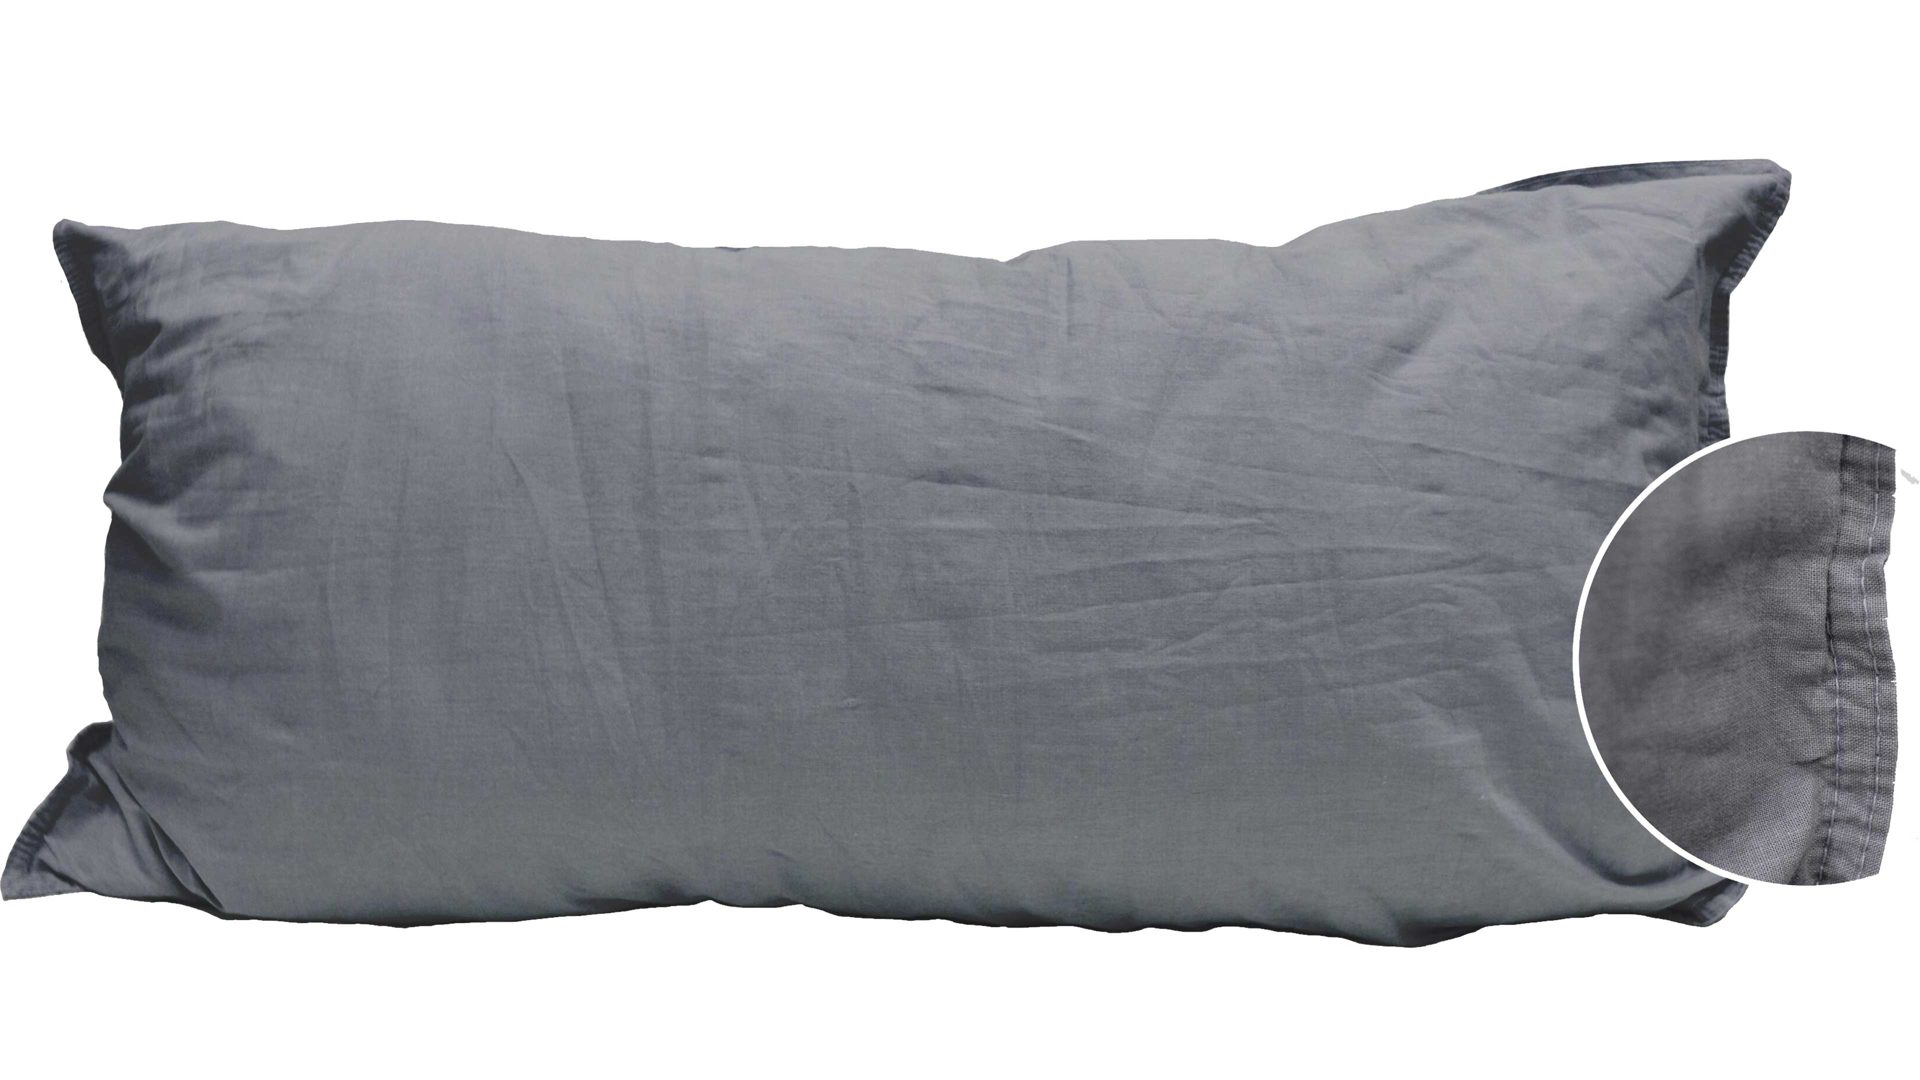 Kissenbezug /-hülle H.g. hahn haustextilien aus Stoff in Anthrazit HAHN Kissenbezug Stone Washed anthrazitfarbene Baumwolle – ca. 40 x 80 cm